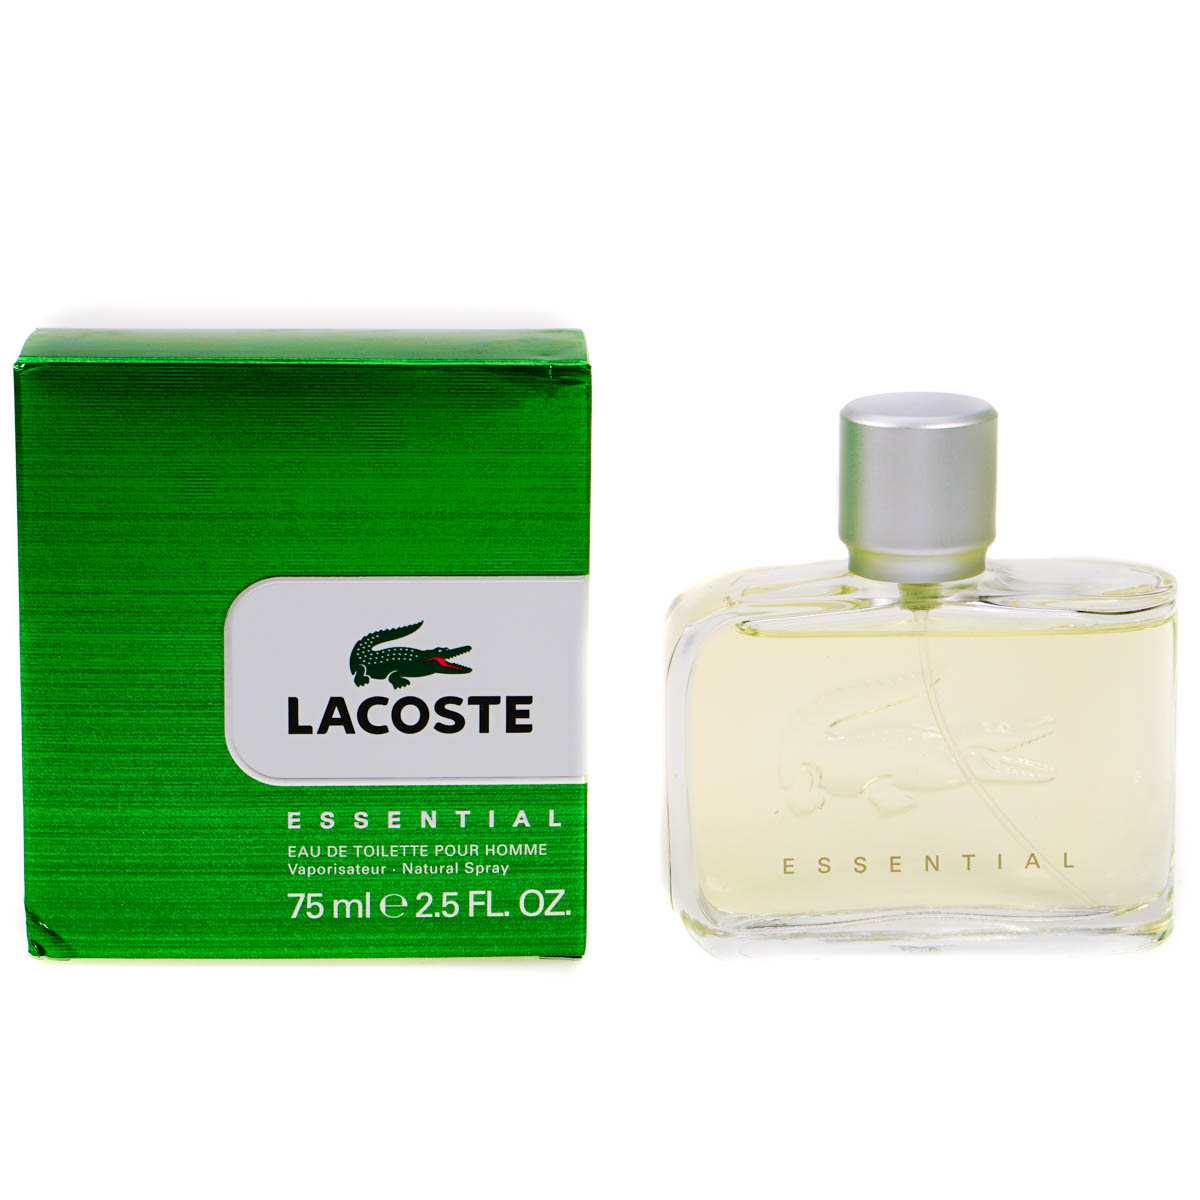 Lacoste Essential 75ml Eau De Toilette (Blemished Box)